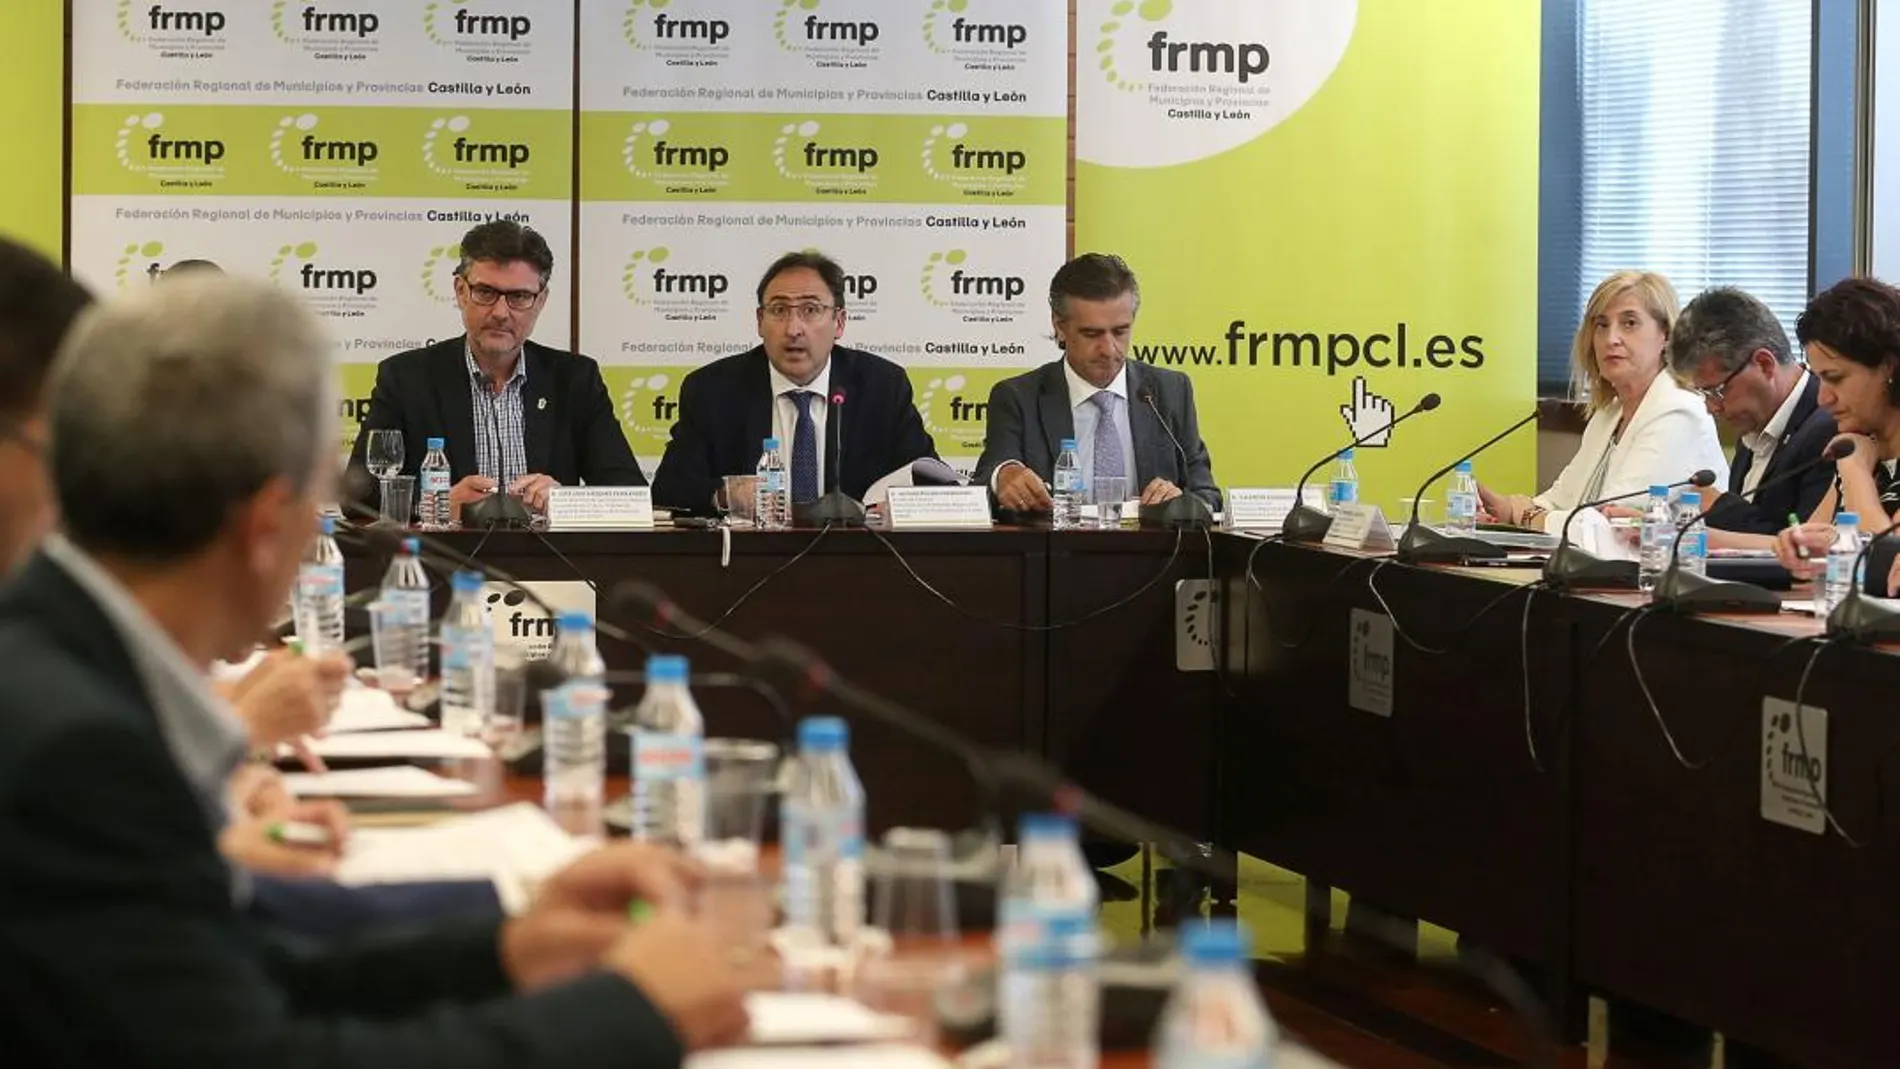 Alfonso Polanco preside la Comisión Ejecutiva de la FRMP junto a José Luis Vázquez y Valentín Cisneros